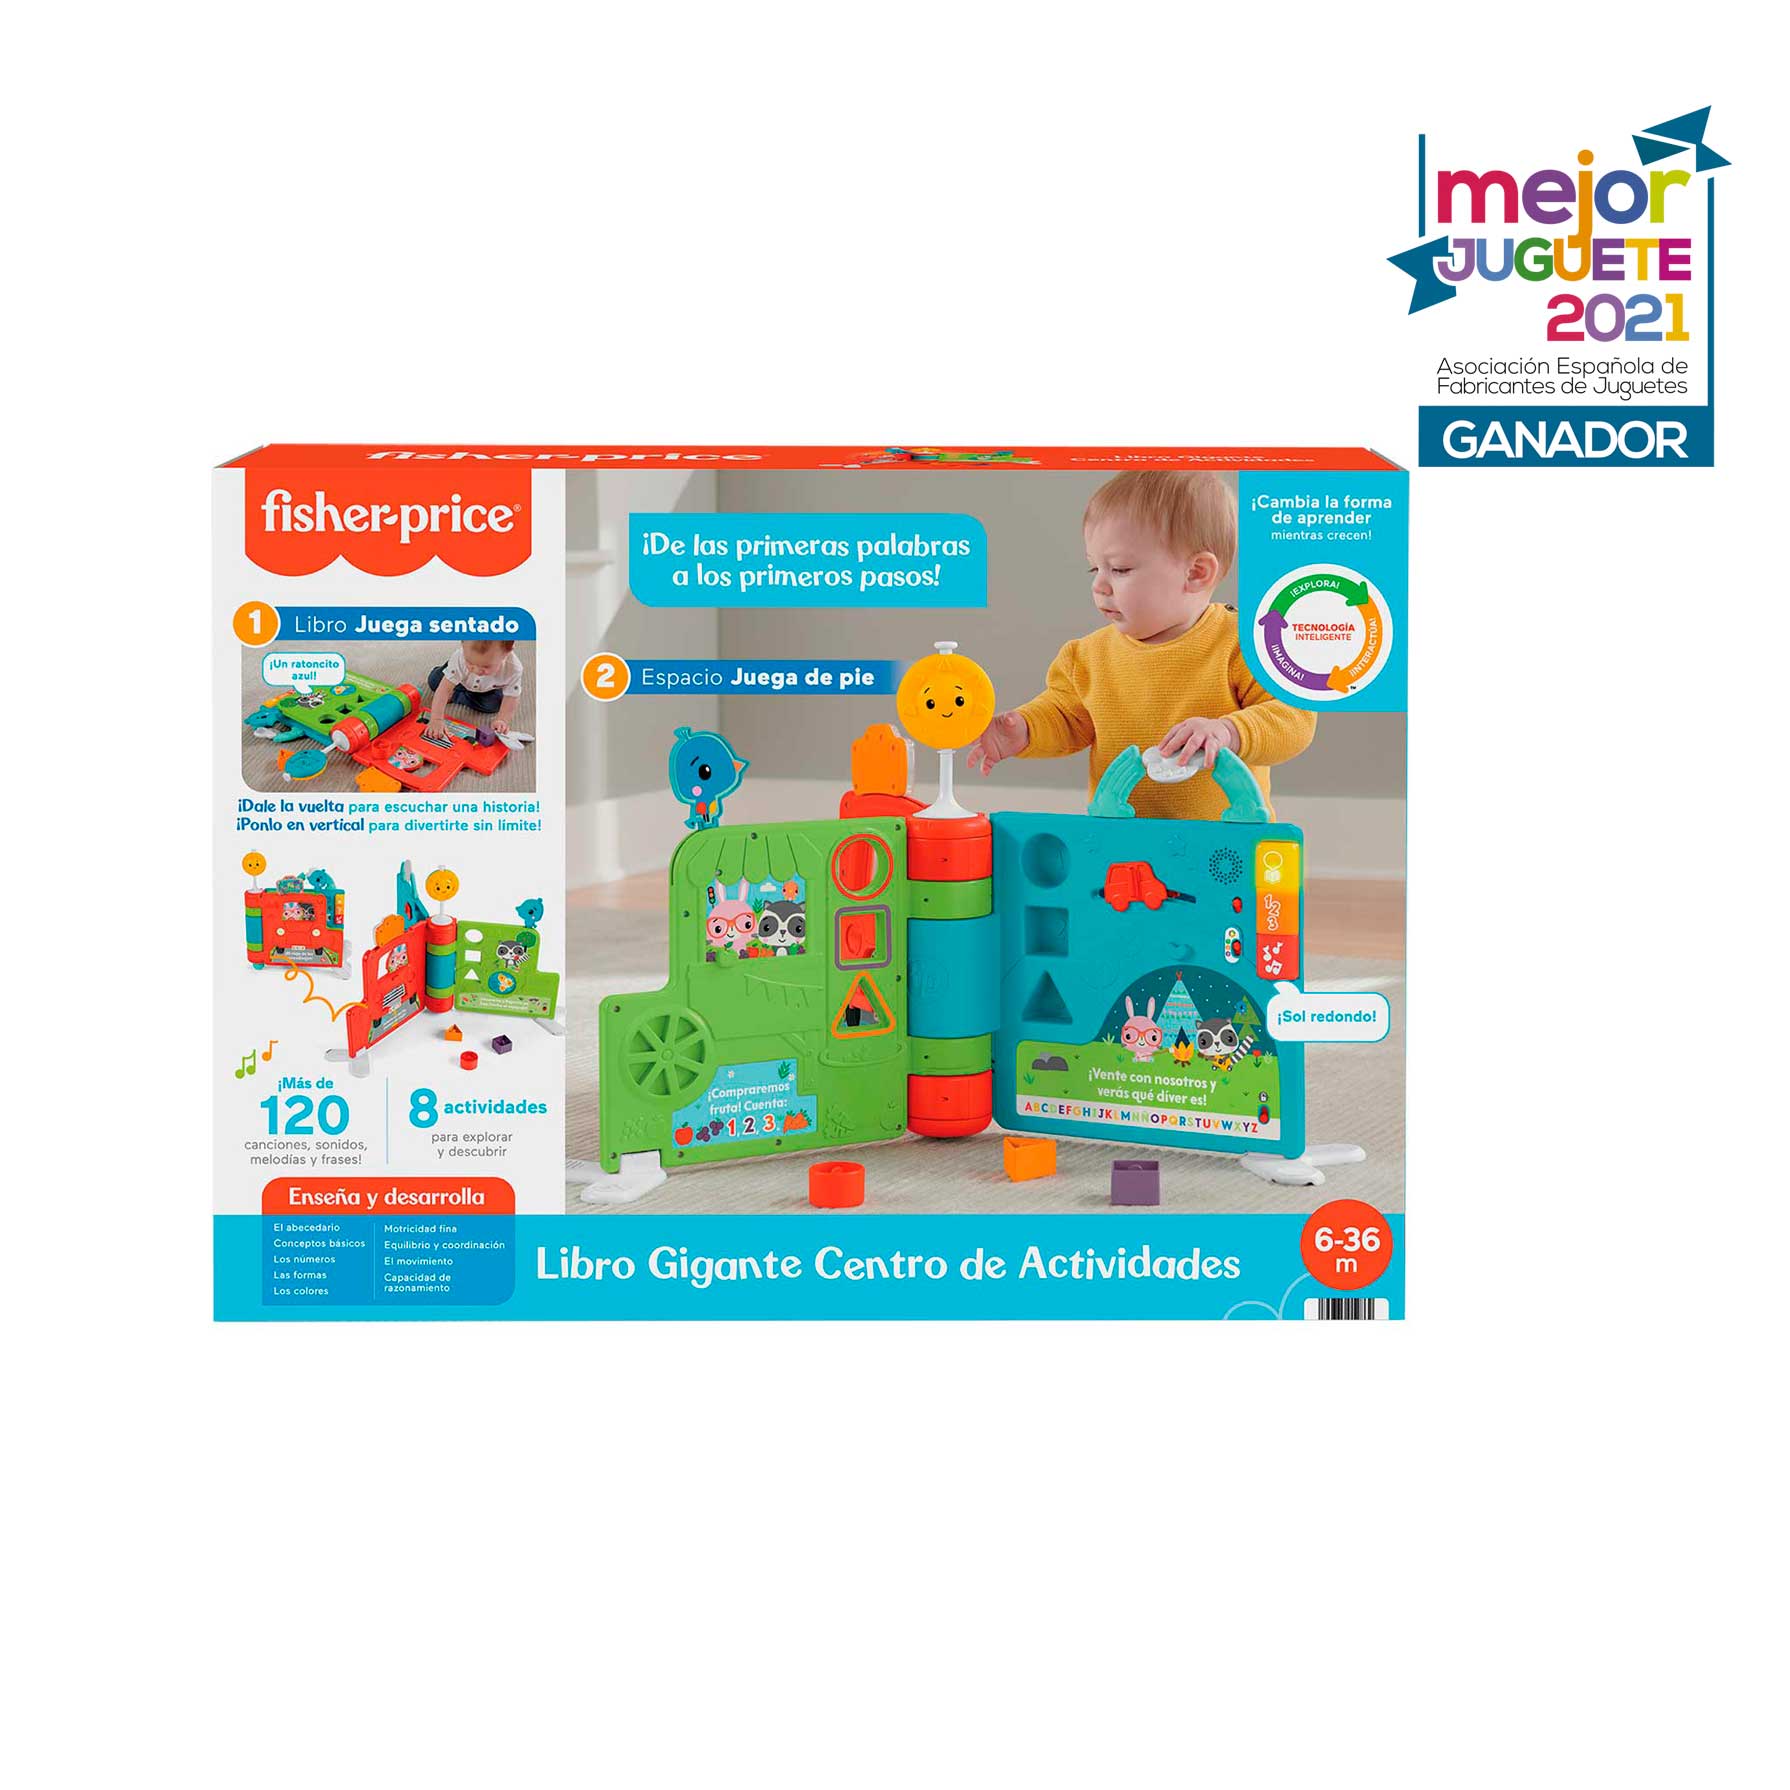 Libro interactivo juguete de aprendizaje para bebé Fisher-Price